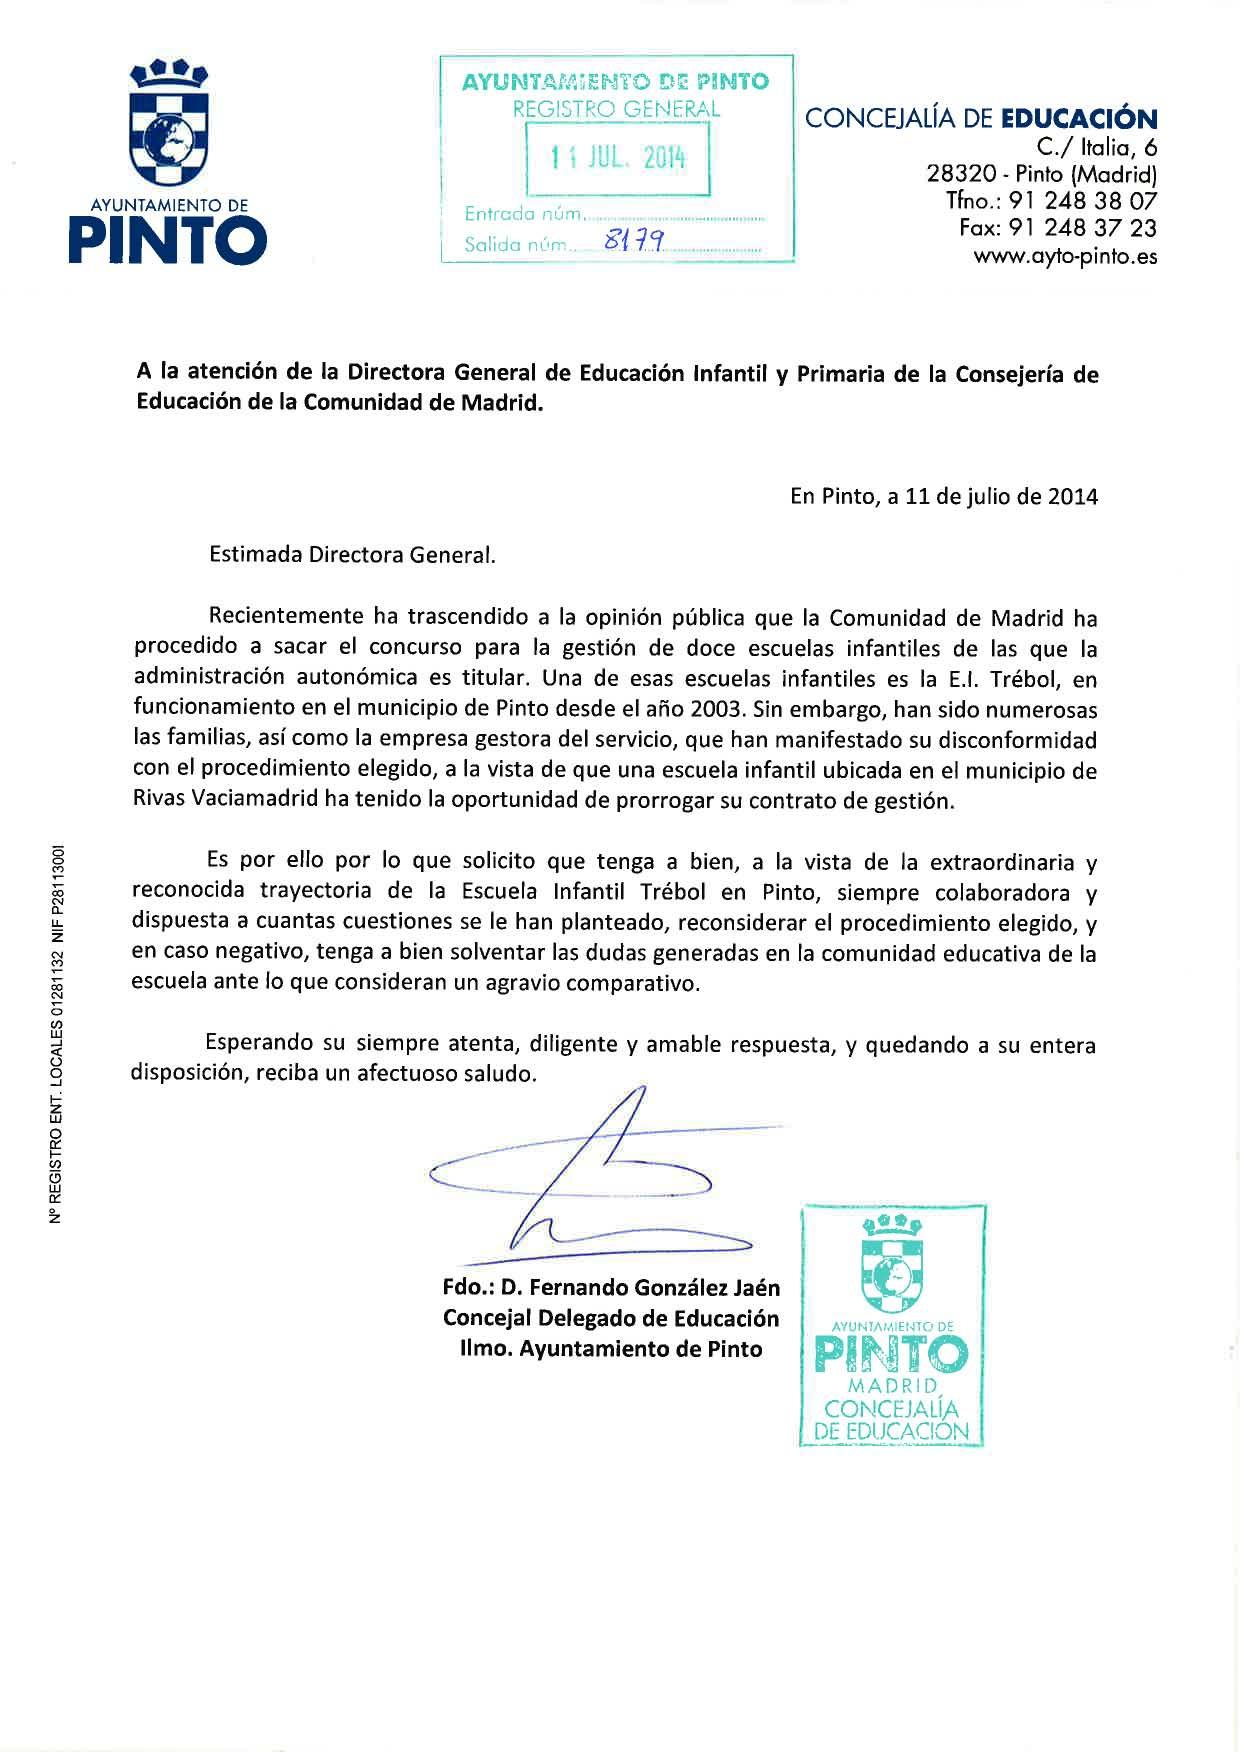 Noticias::El Equipo de Gobierno reclama a la Comunidad de Madrid que se prorrogue el contrato de la gestión de la Escuela Infantil Trébol